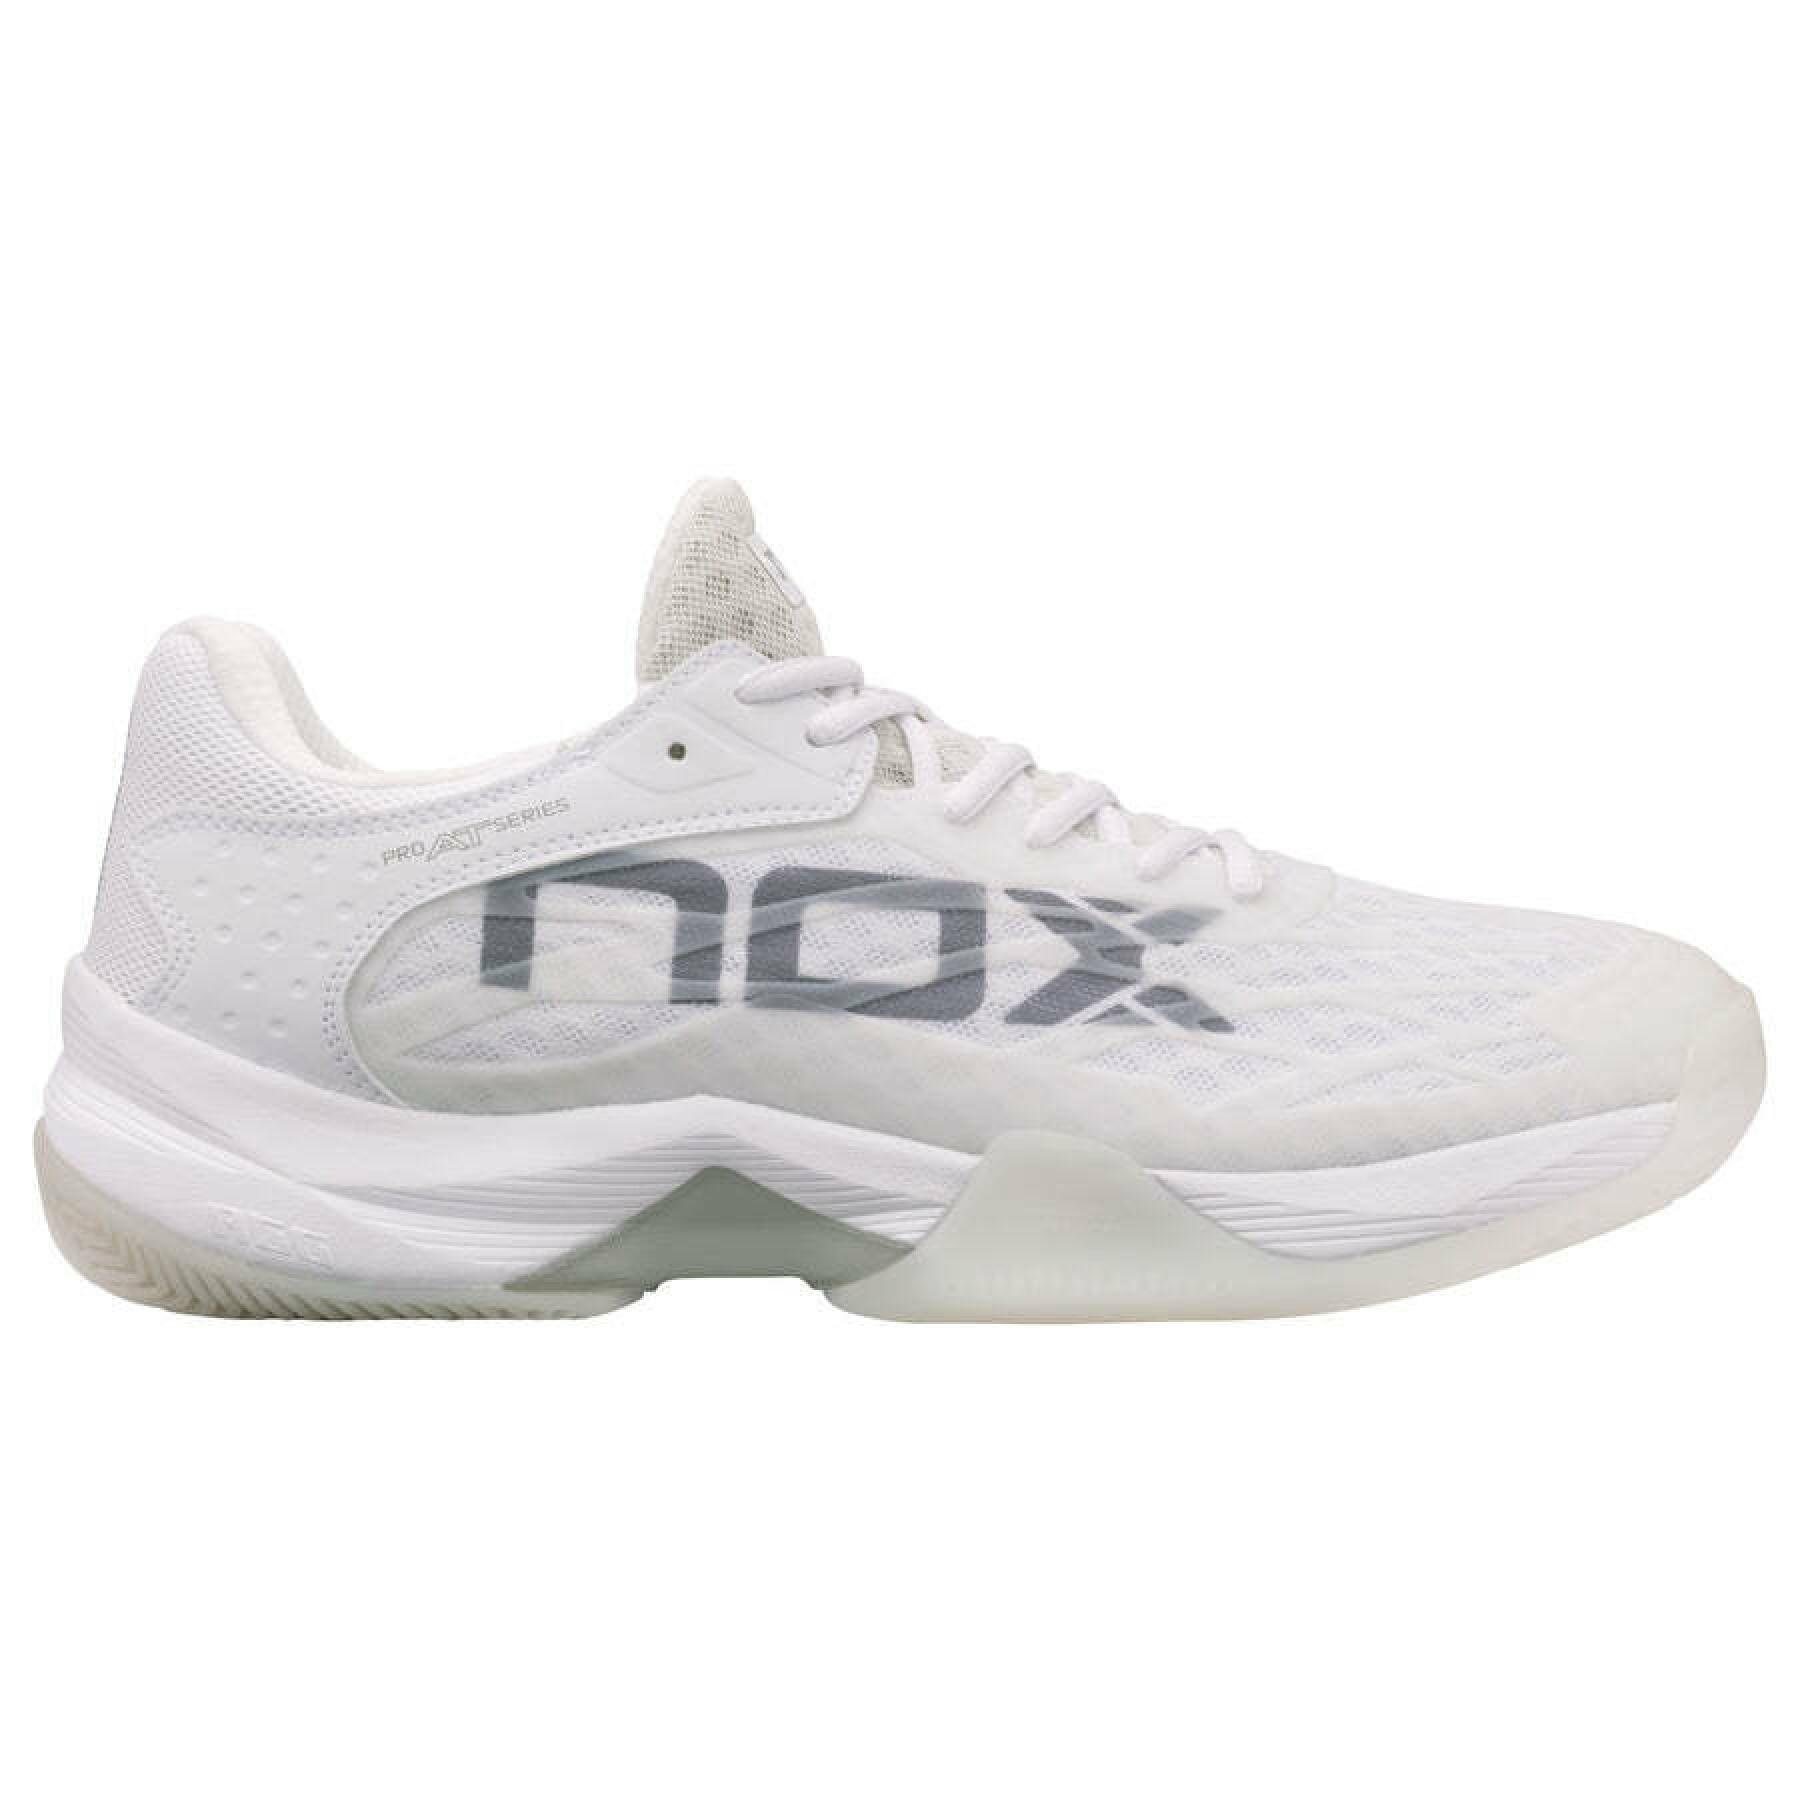 Indoor shoes Nox At10 Lux